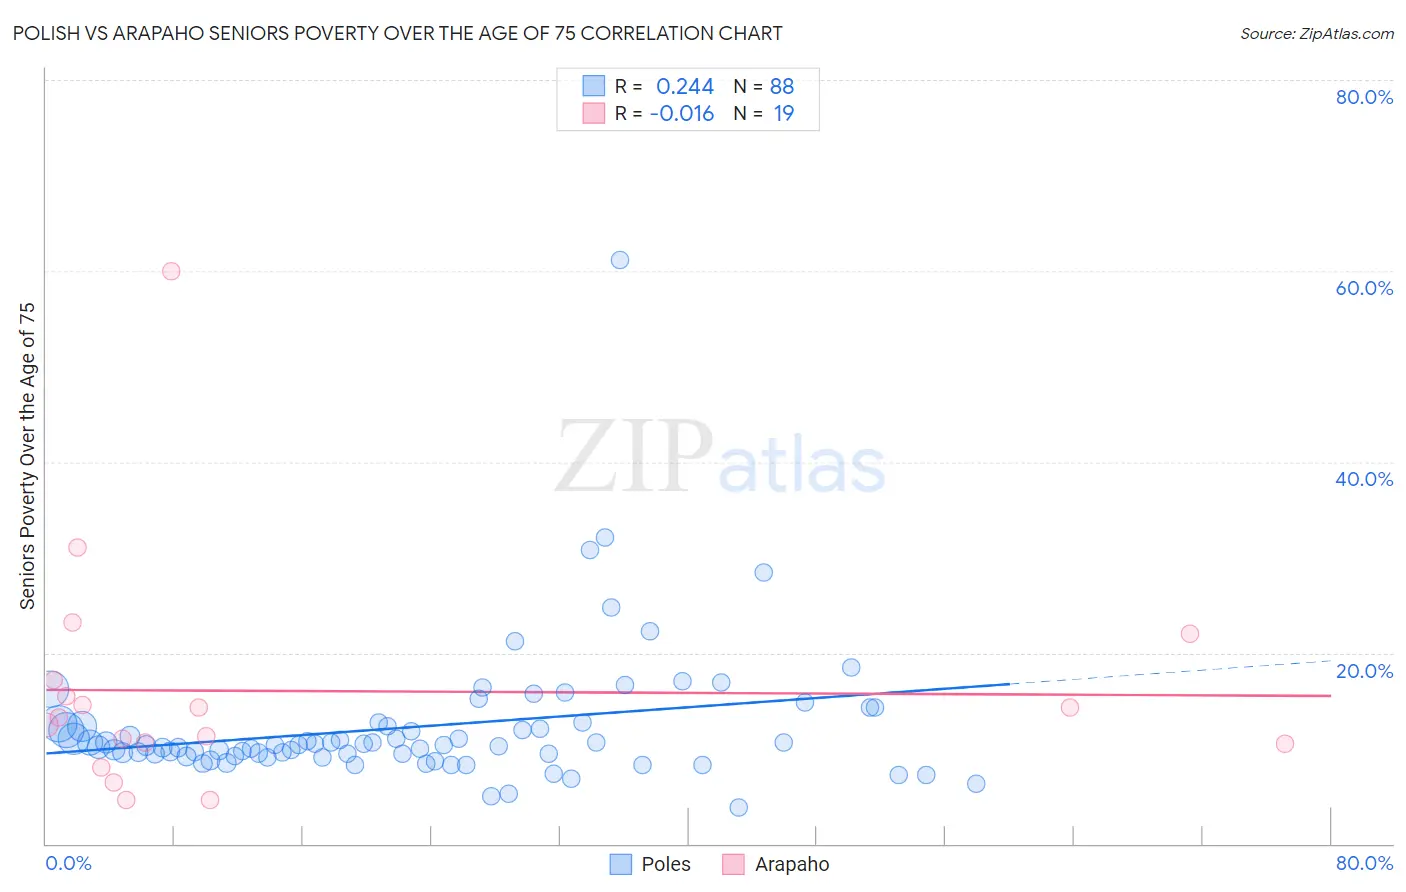 Polish vs Arapaho Seniors Poverty Over the Age of 75